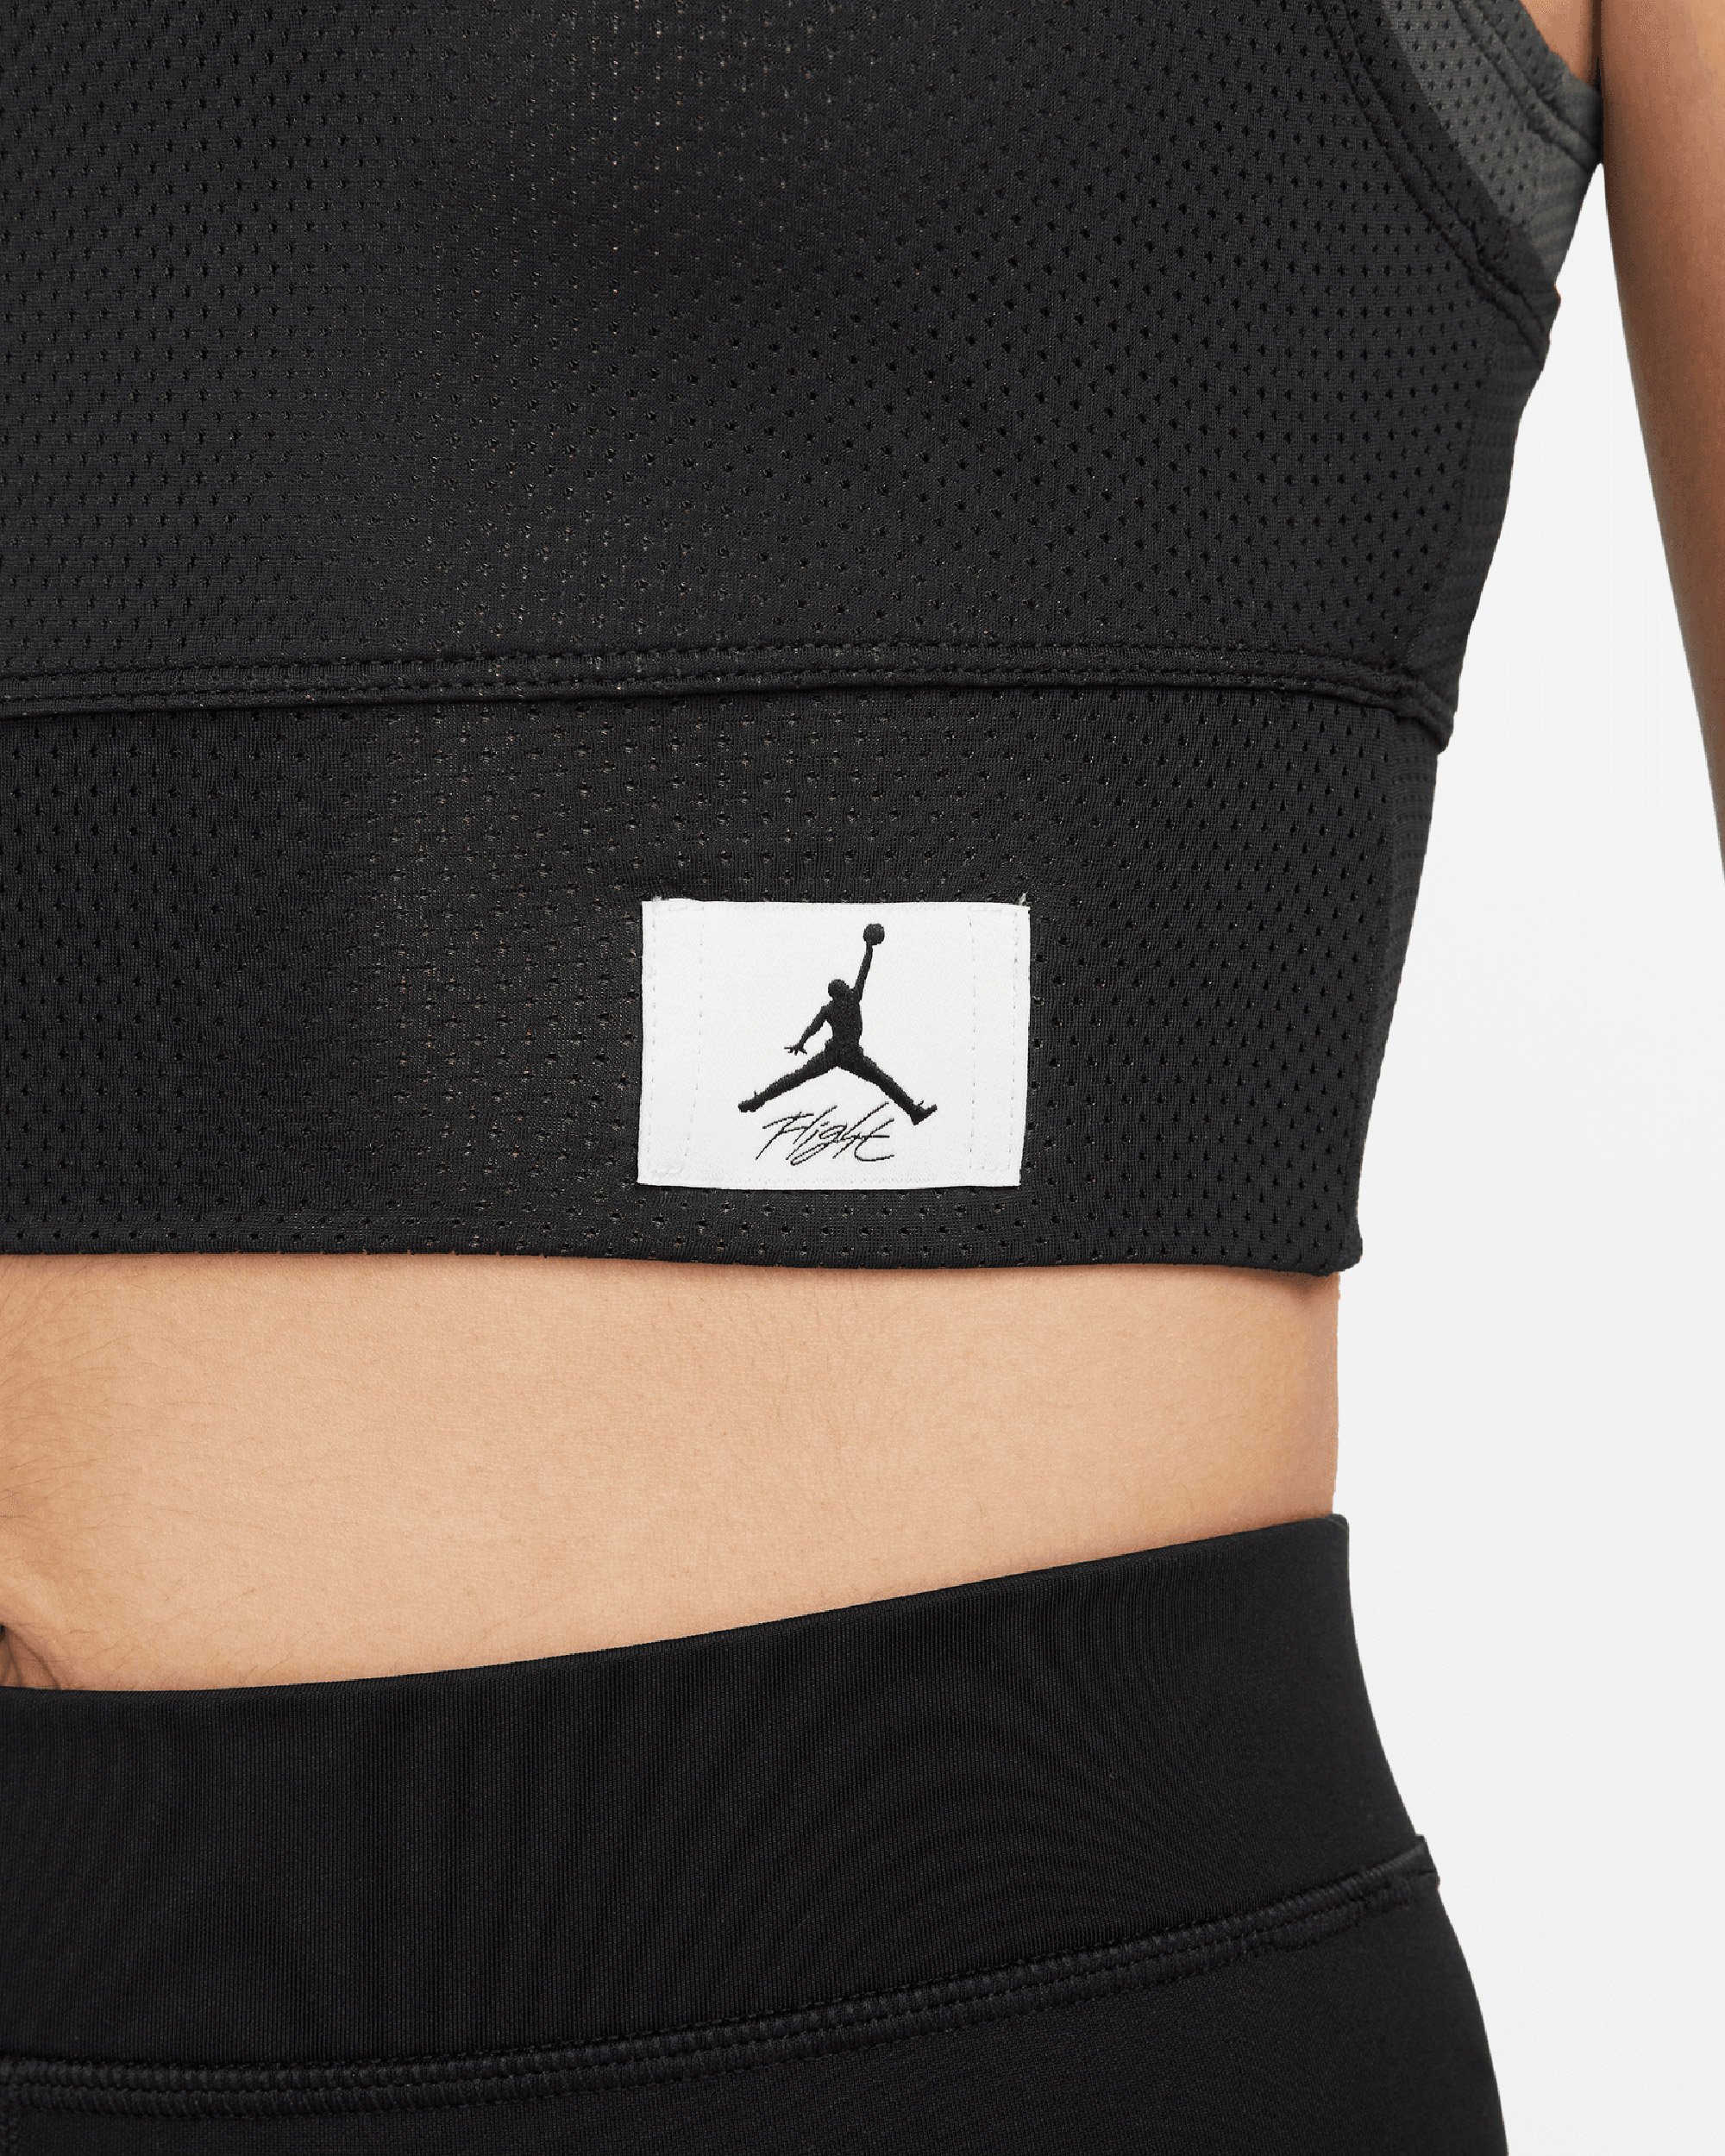 Camiseta Jordan Essentials Women's Cropped Top Black